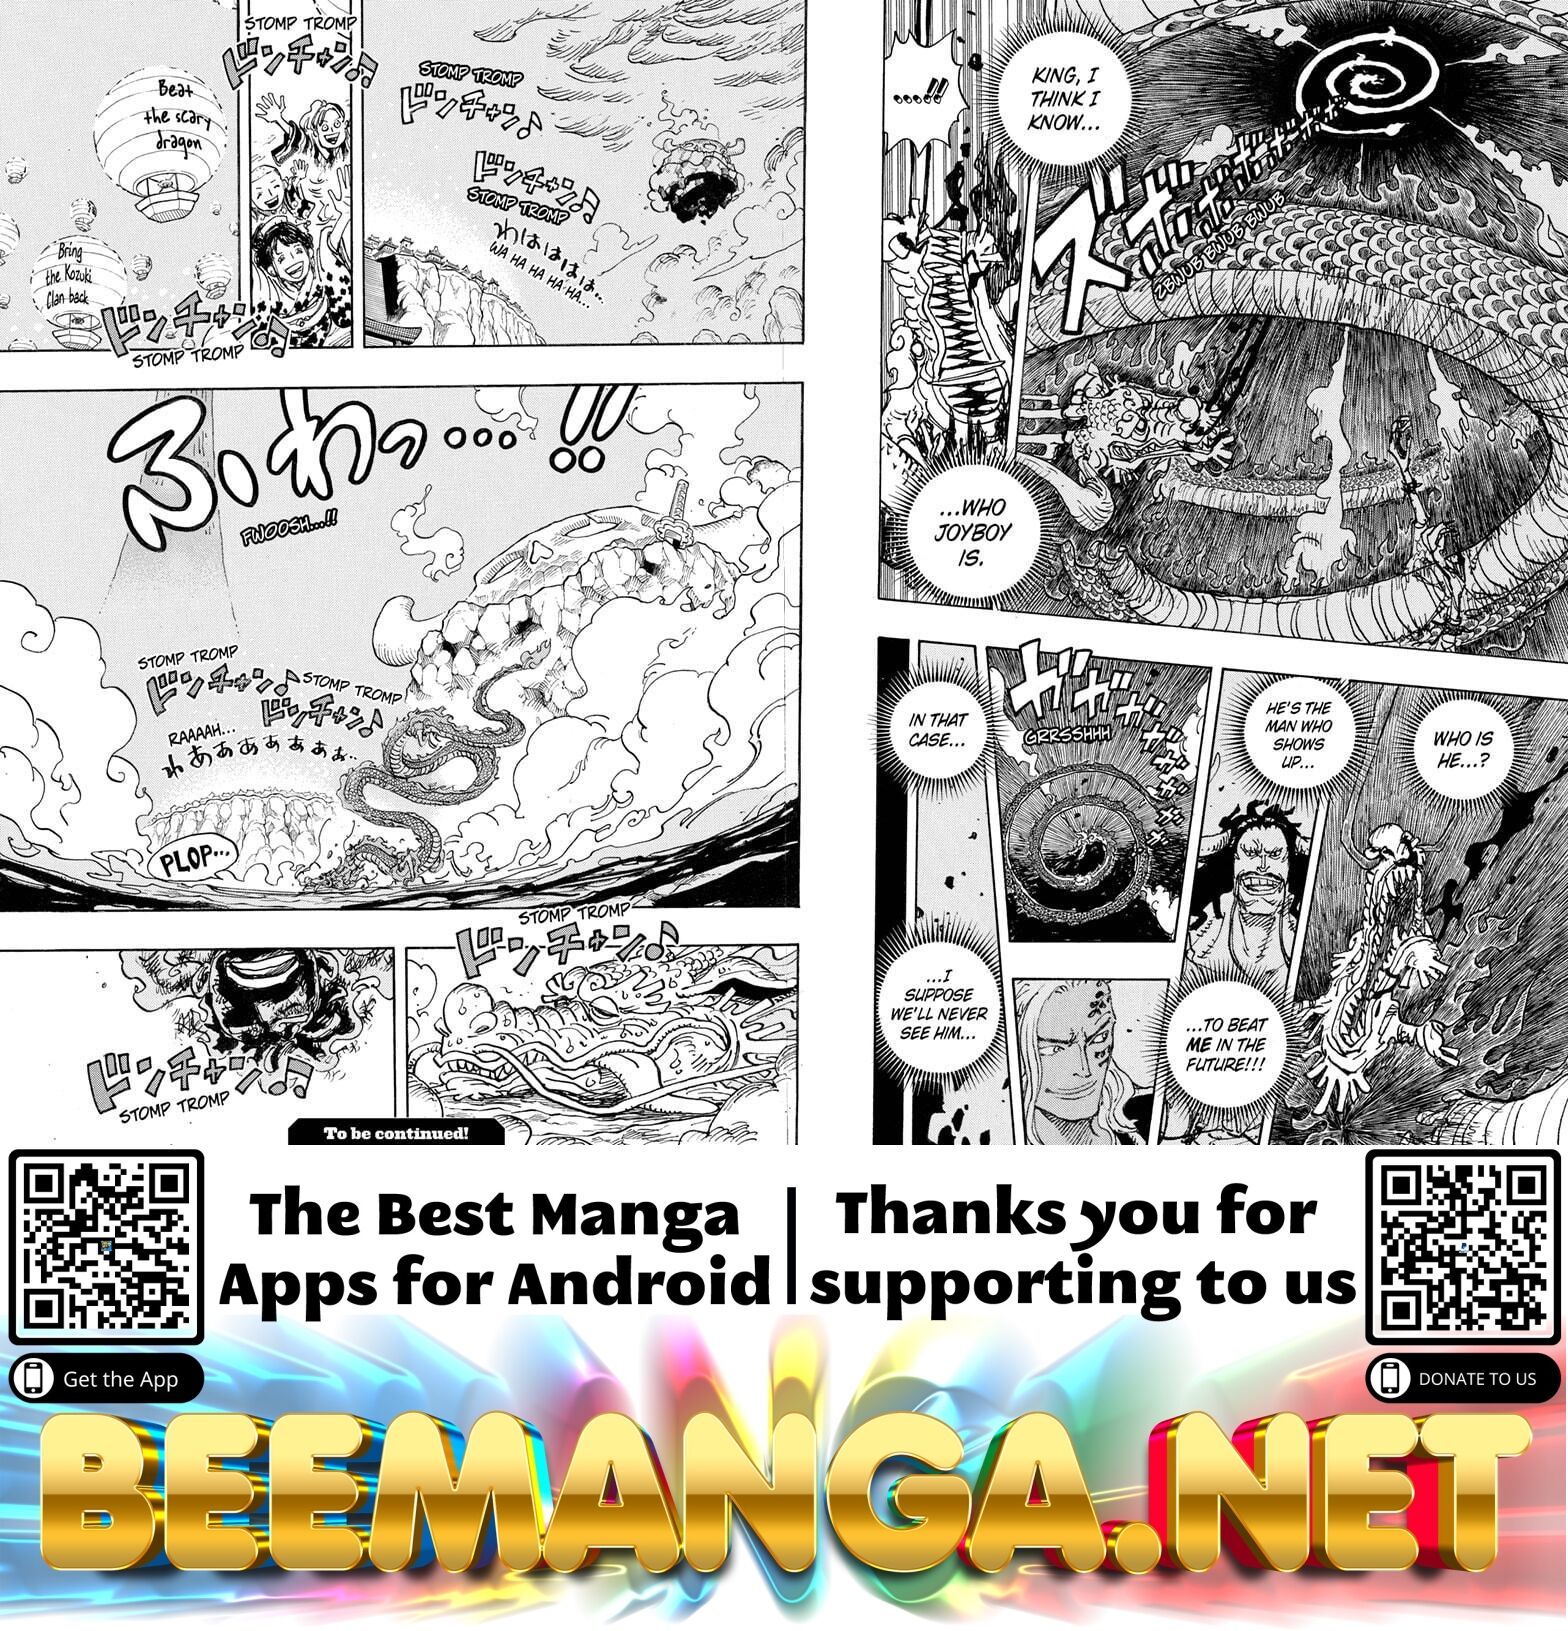 One Piece Chapter 1049 - HolyManga.net